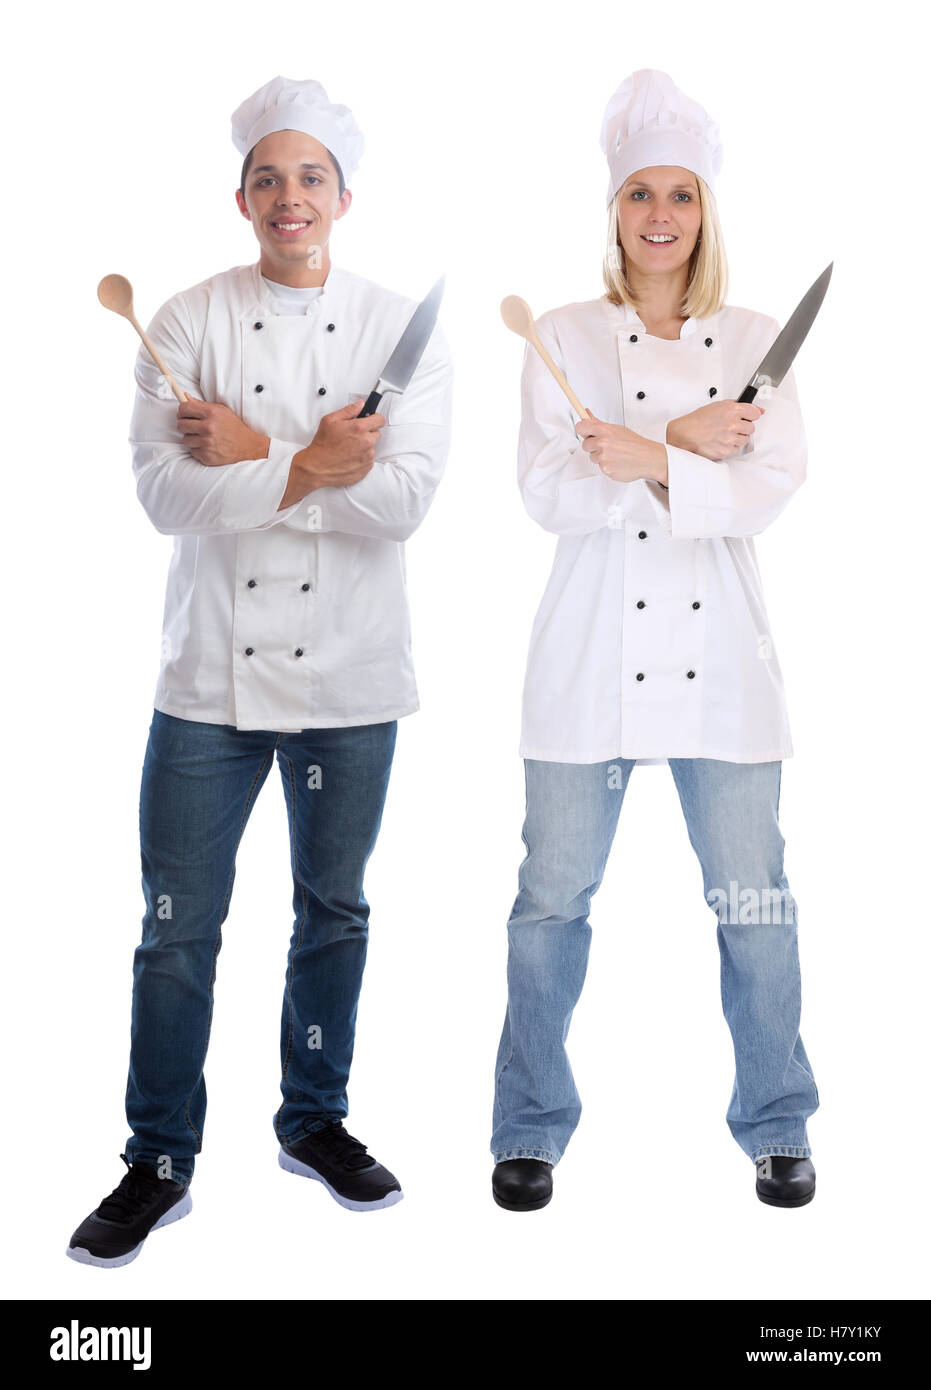 Apprendista cuoco partecipante tirocinanti cuochi permanente corpo completa cottura con coltello giovani lavoro isolato su uno sfondo bianco Foto Stock